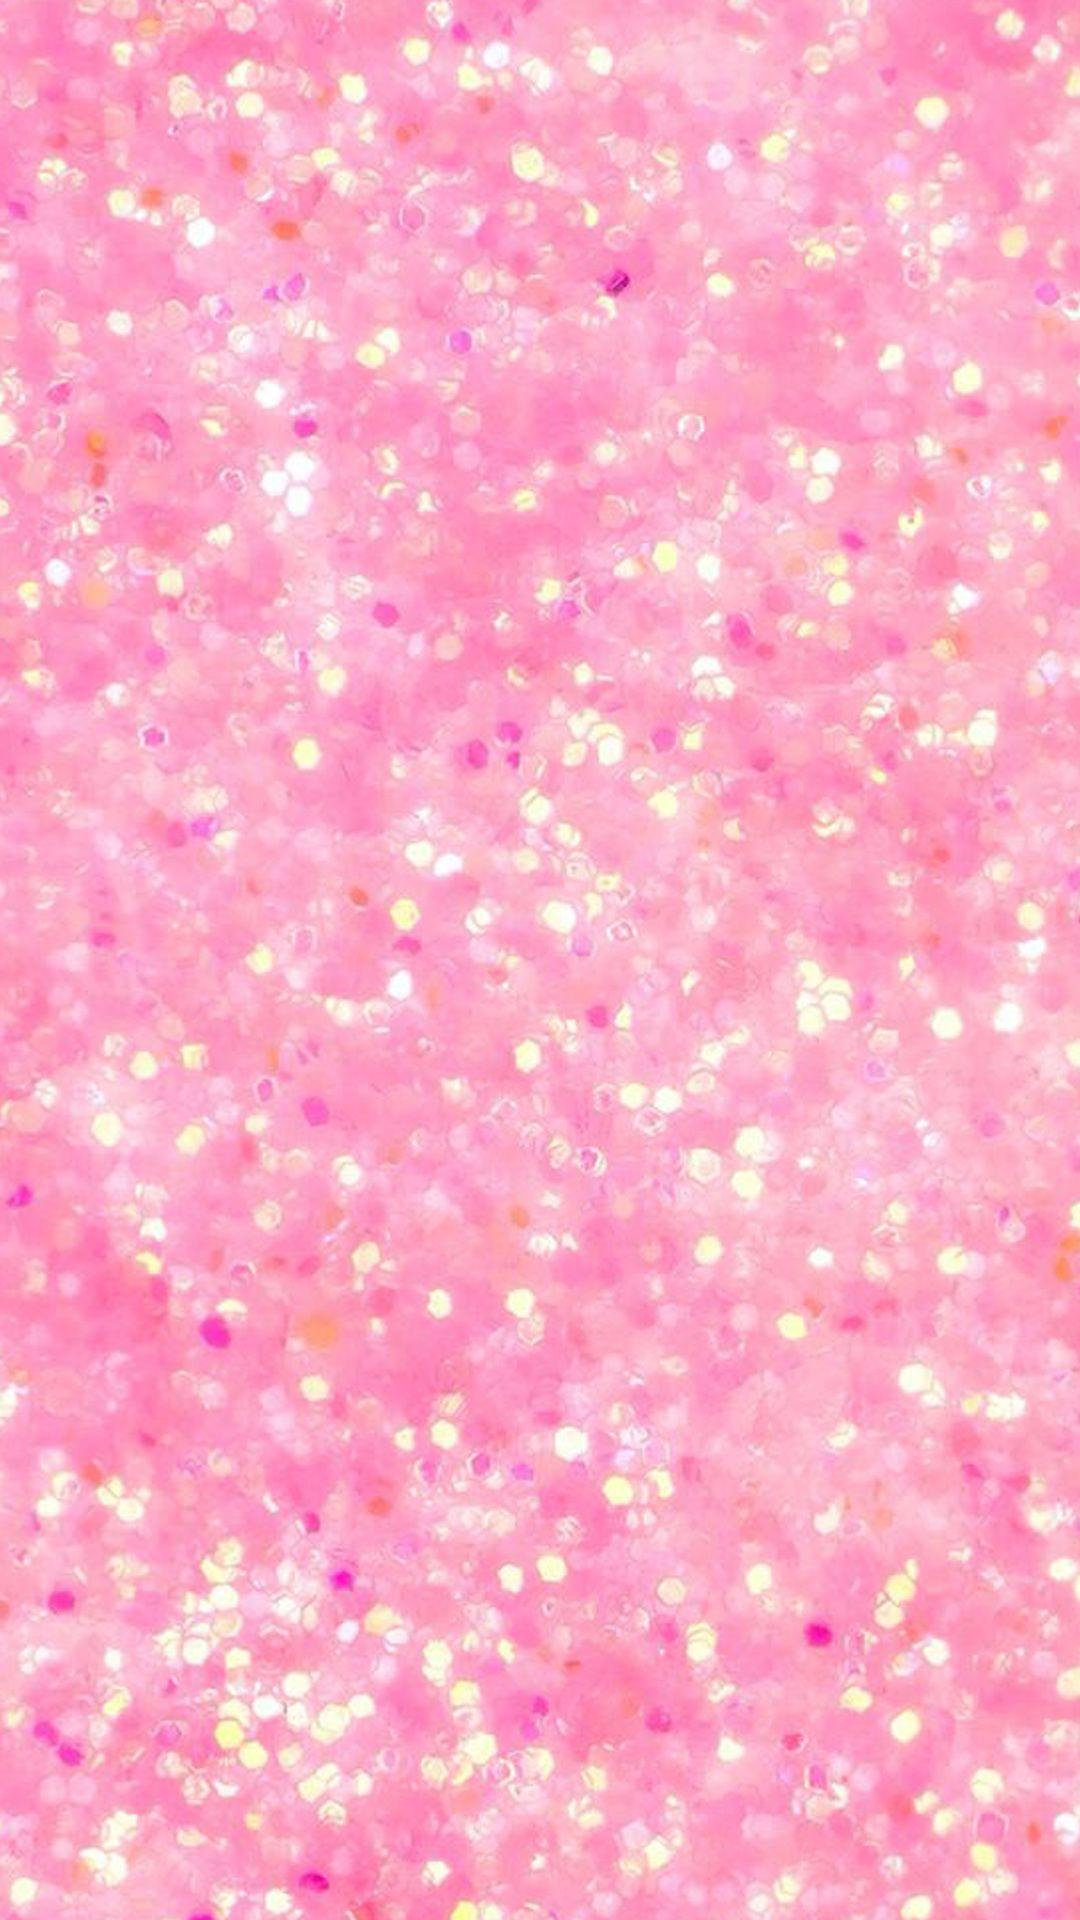 Hình nền 1080x1920 Cuối tuần: In the Pink - Hình nền iPhone màu hồng